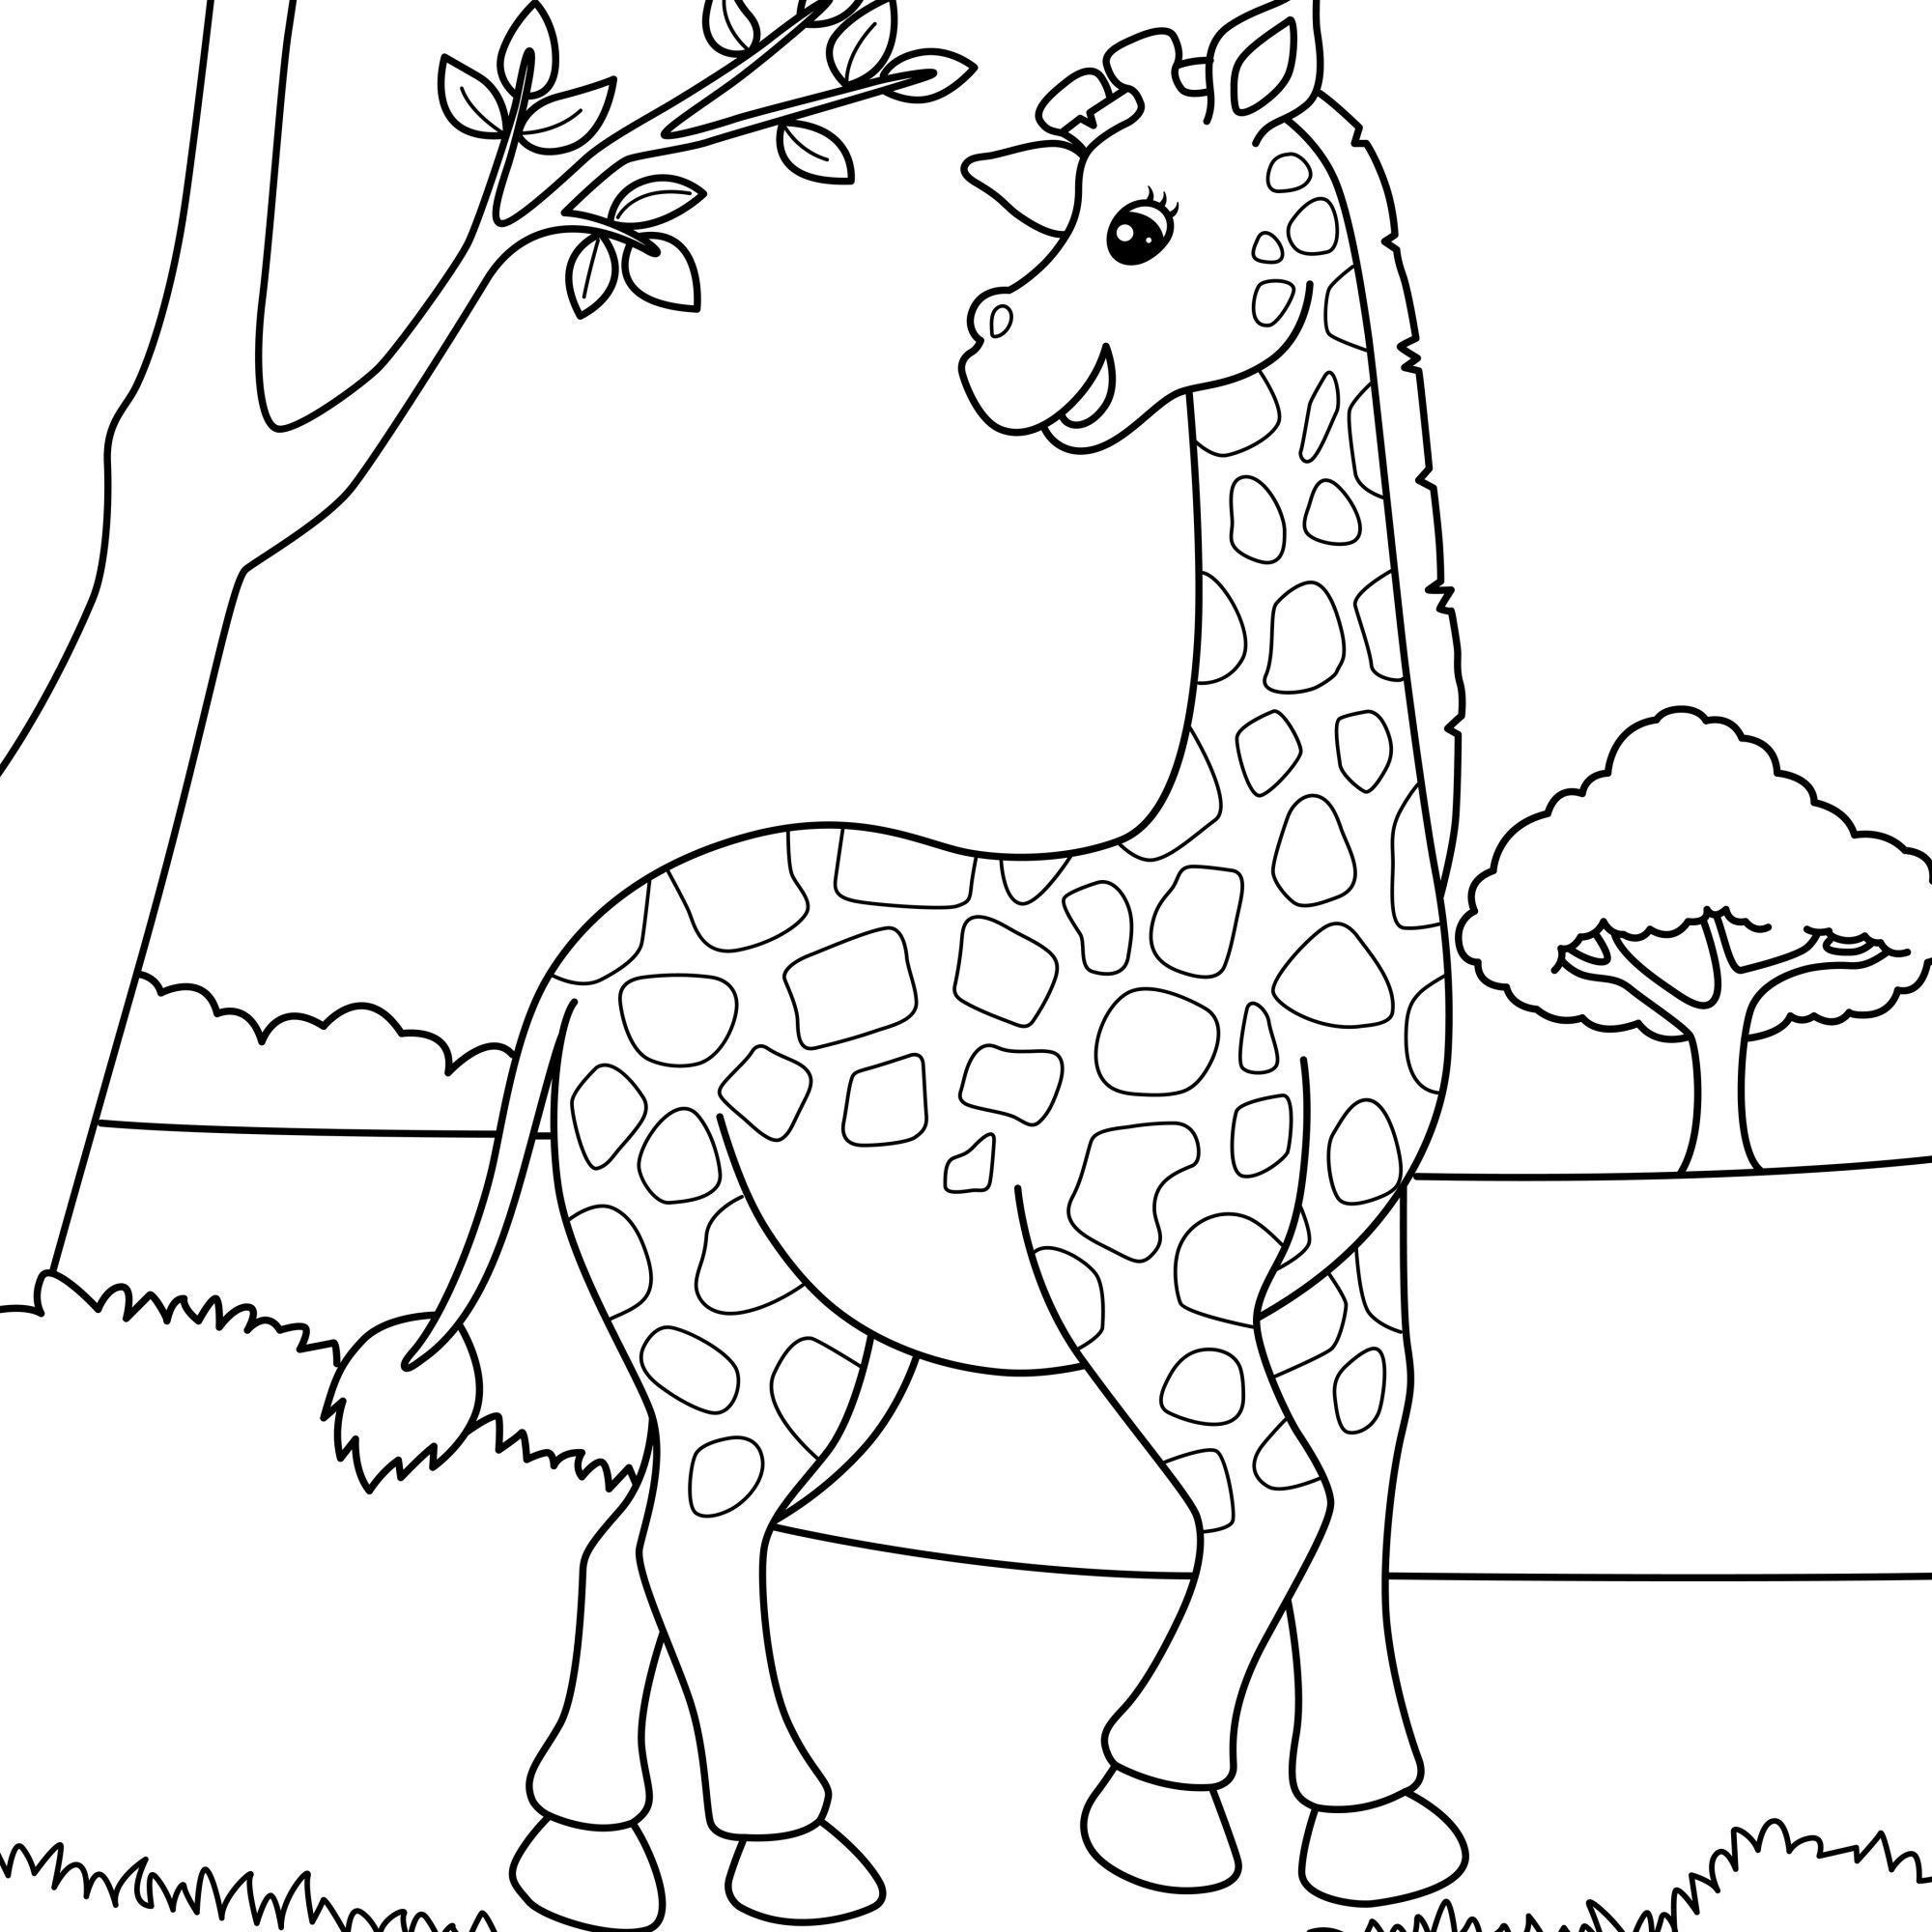 Раскраска для детей: жираф в поле стоит у дерева